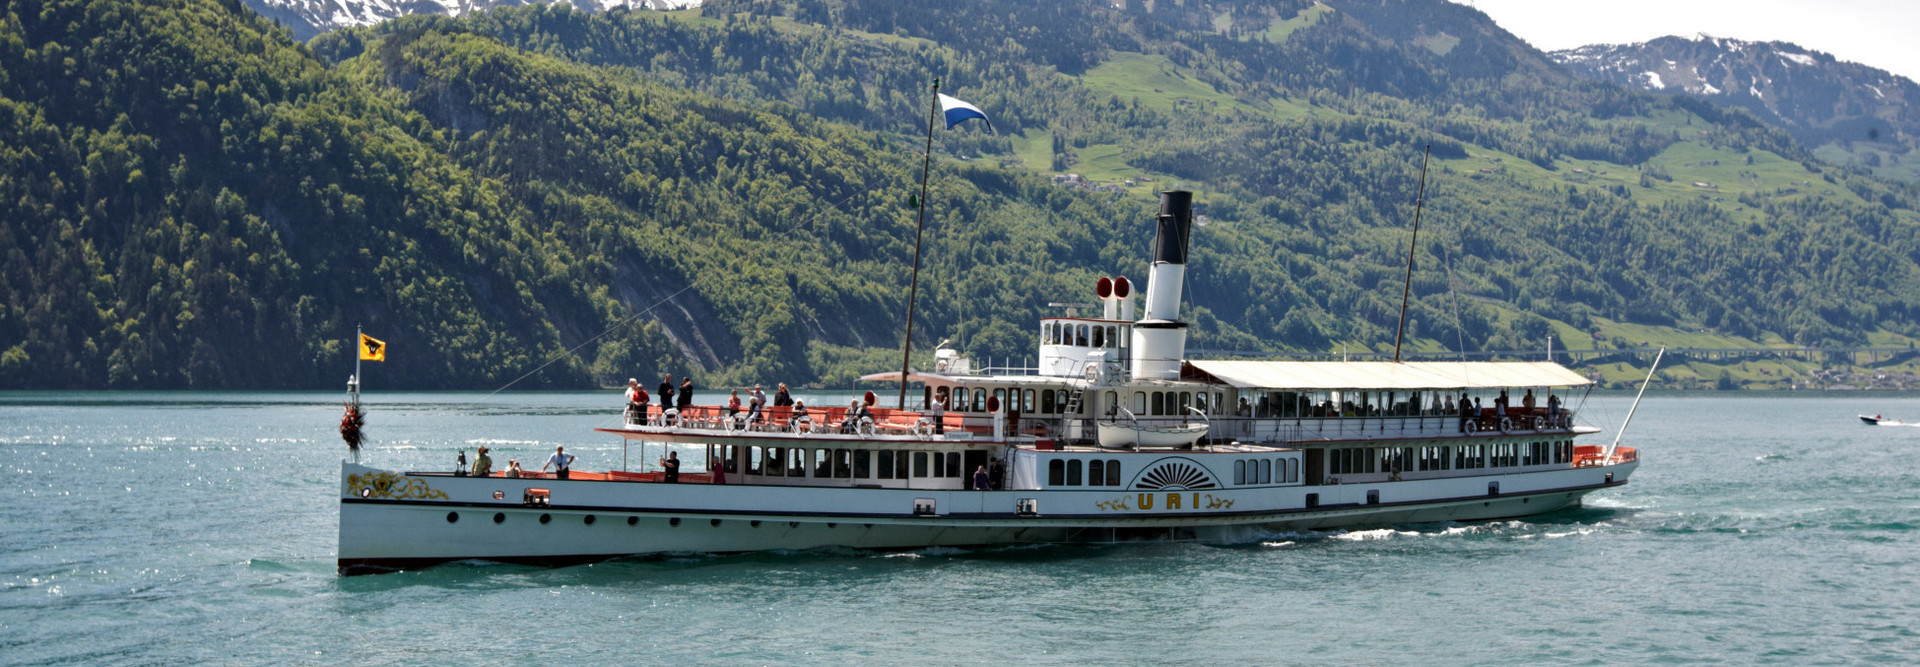 Le bateau à vapeur Uri pendant le voyage sur le lac des Quatre-Cantons devant le Seelisberg.